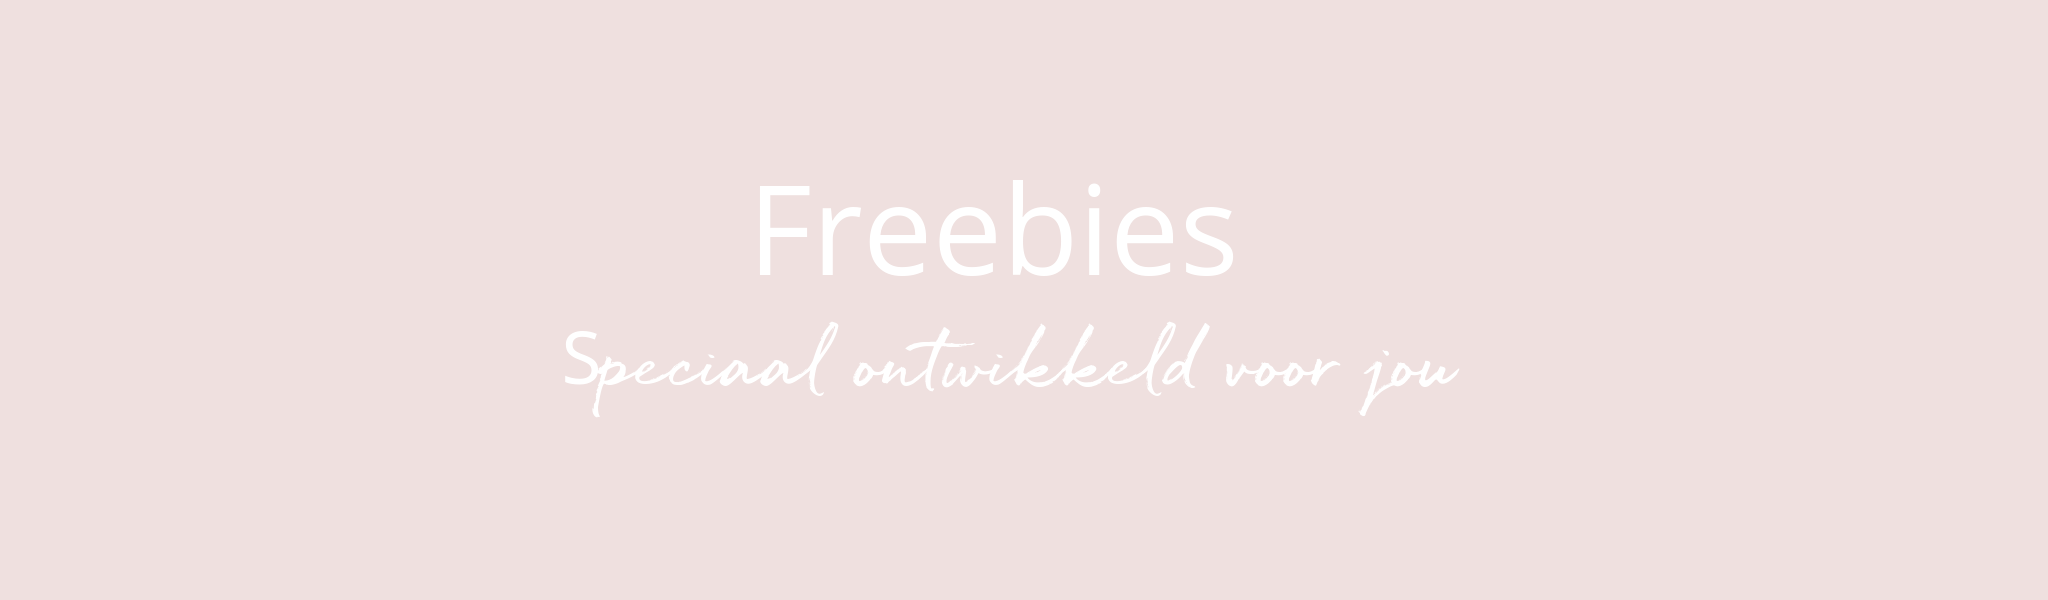 Freebies ontwikkeld voor jou (1)